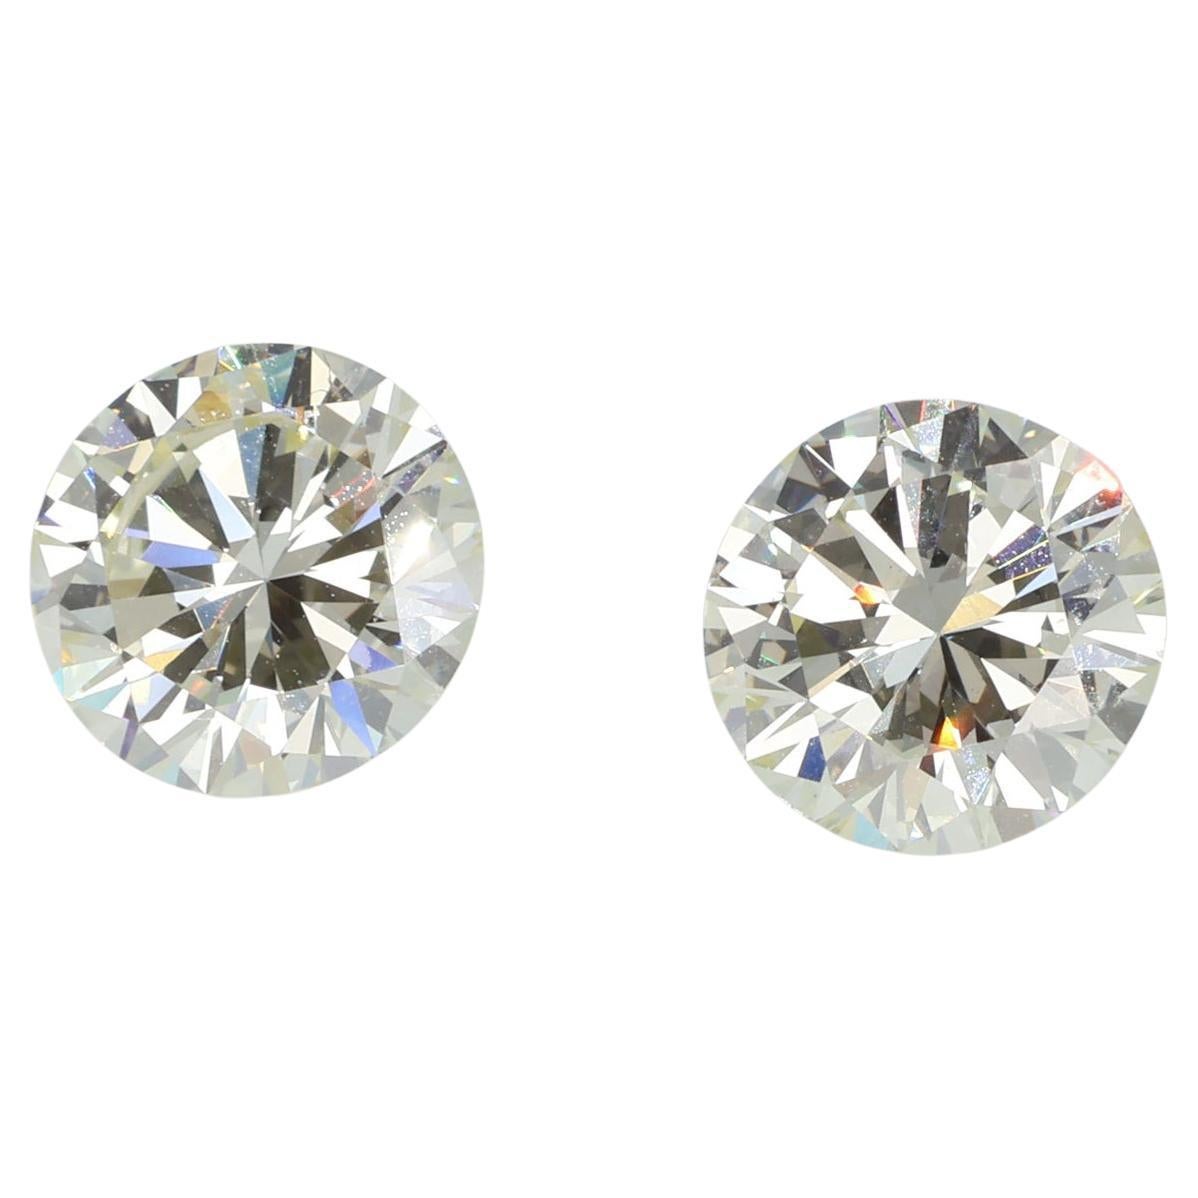 Paire de diamants IGI 2,12 ct + 2,12 ct Duet VS1 - Très clair jaune 4,24 ct en vente